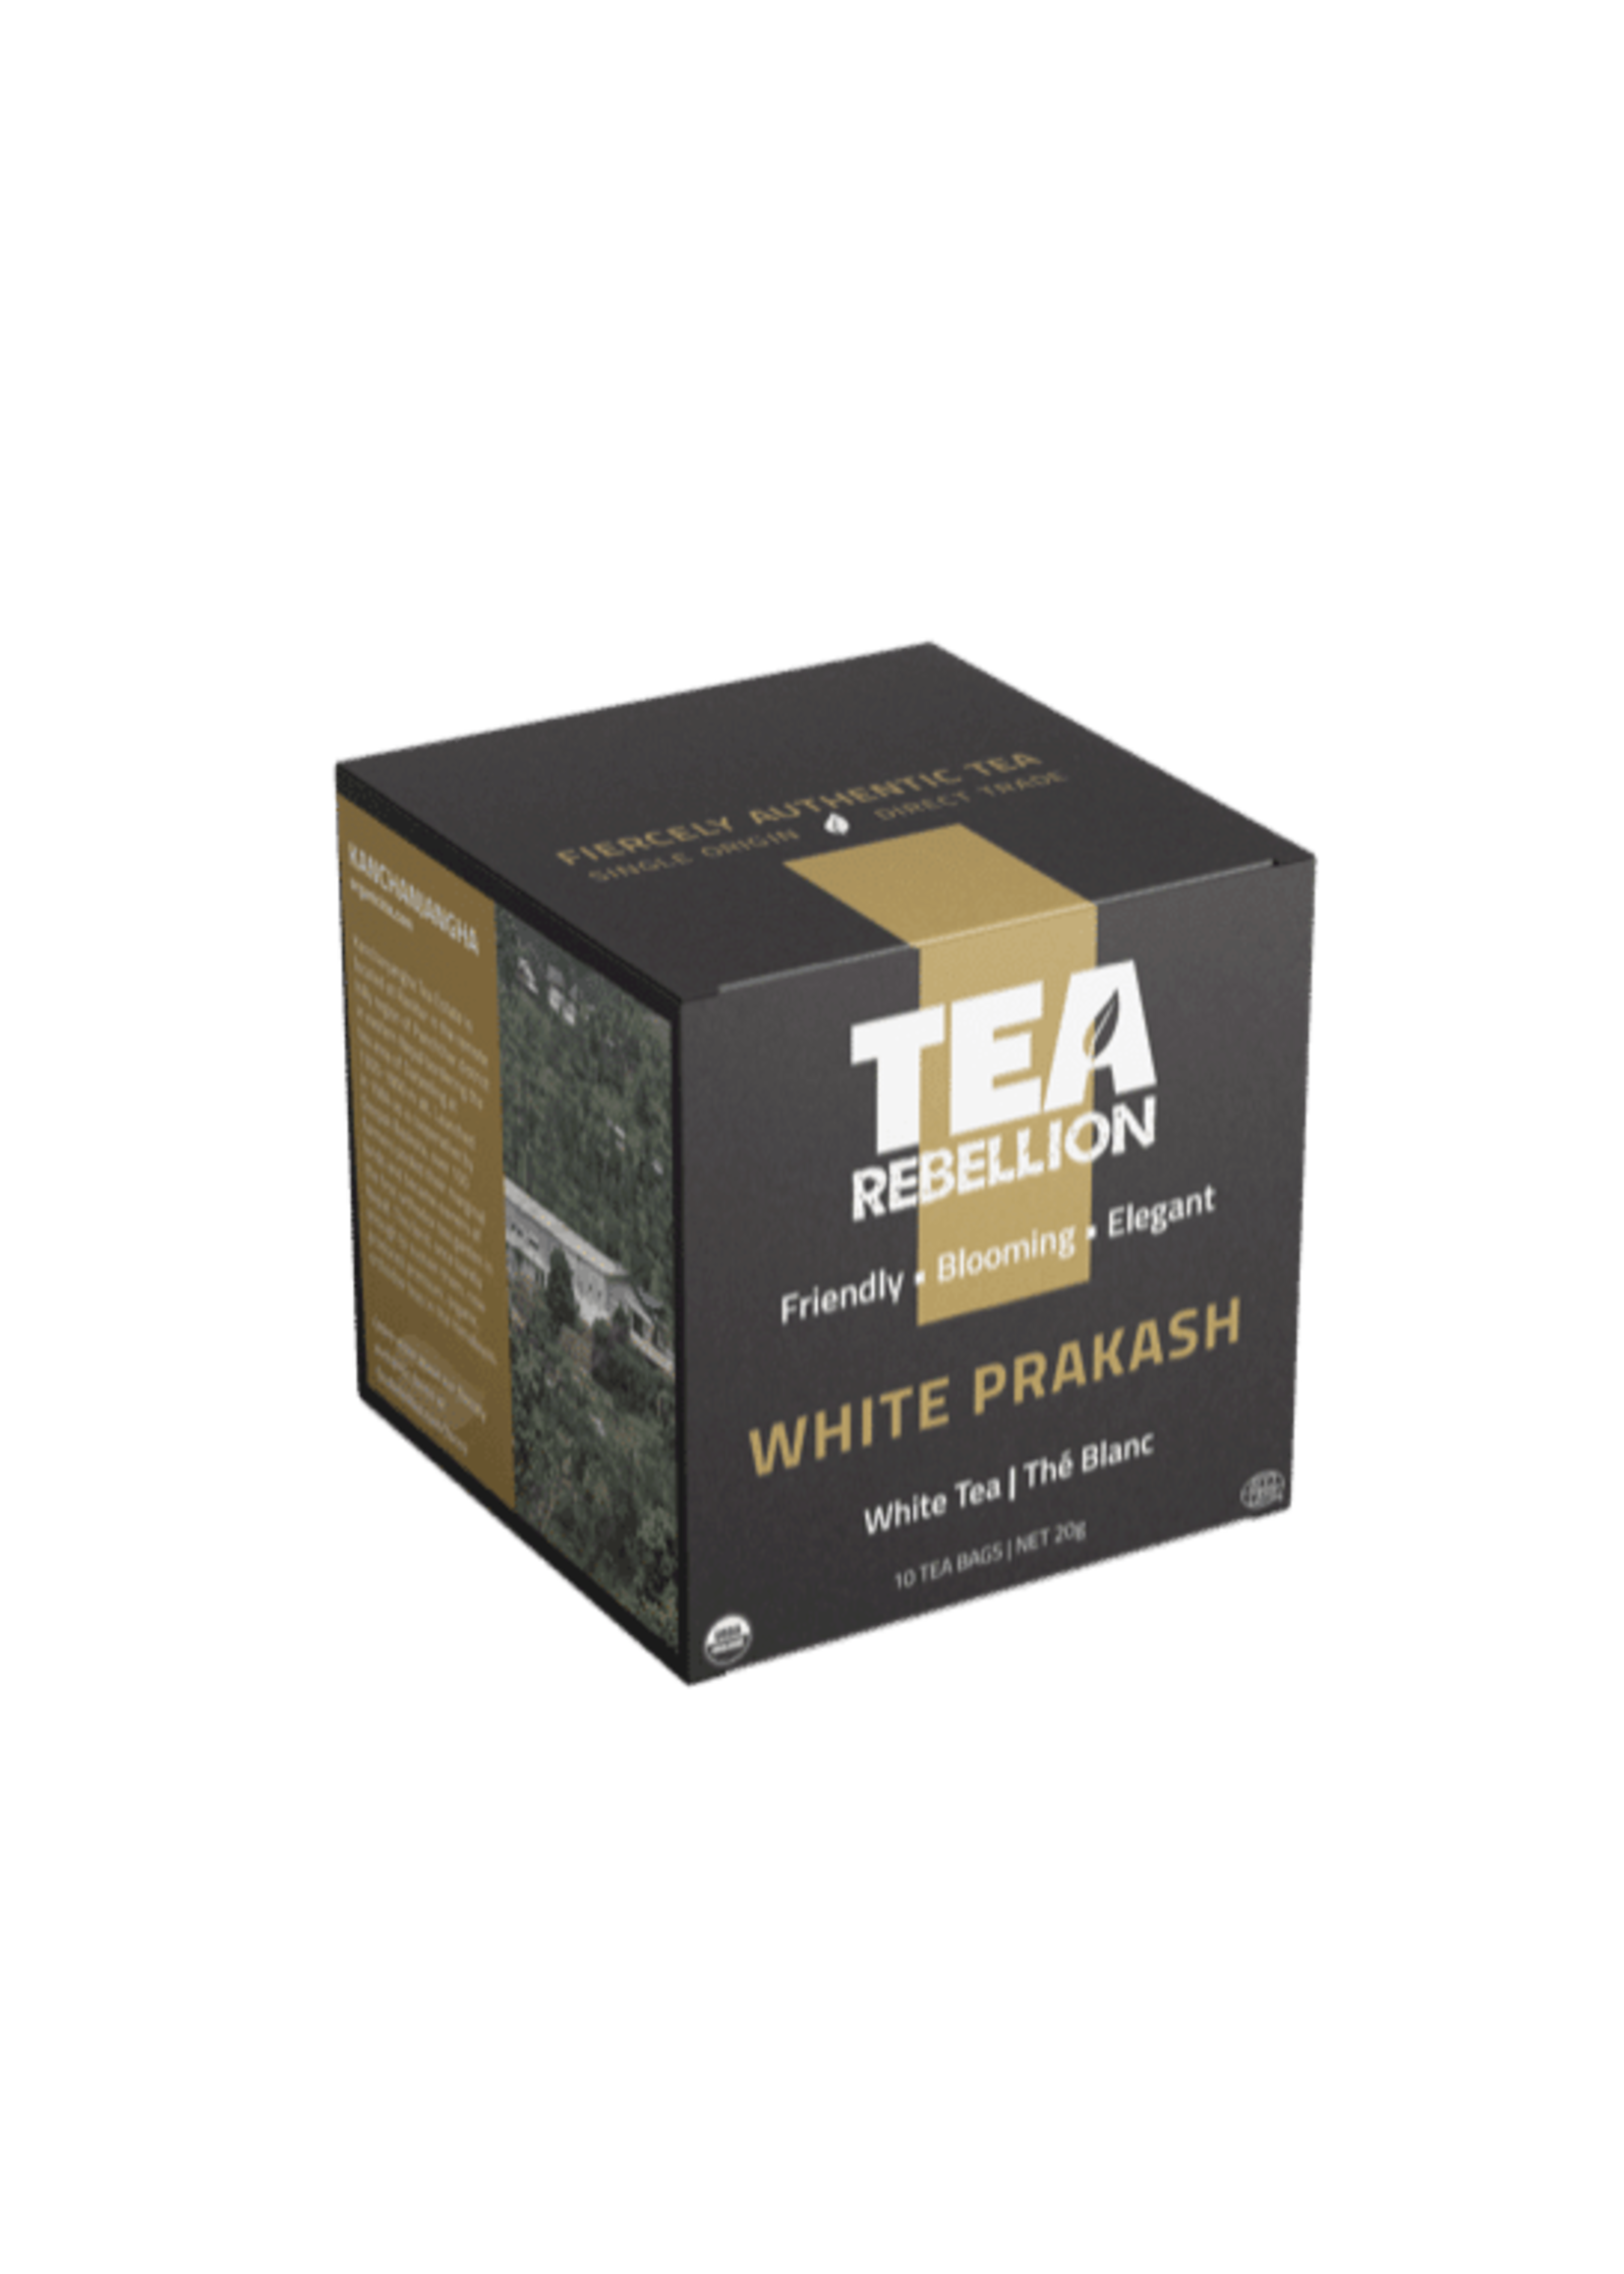 Tea Reb D/C Tea Reb- White Prakash